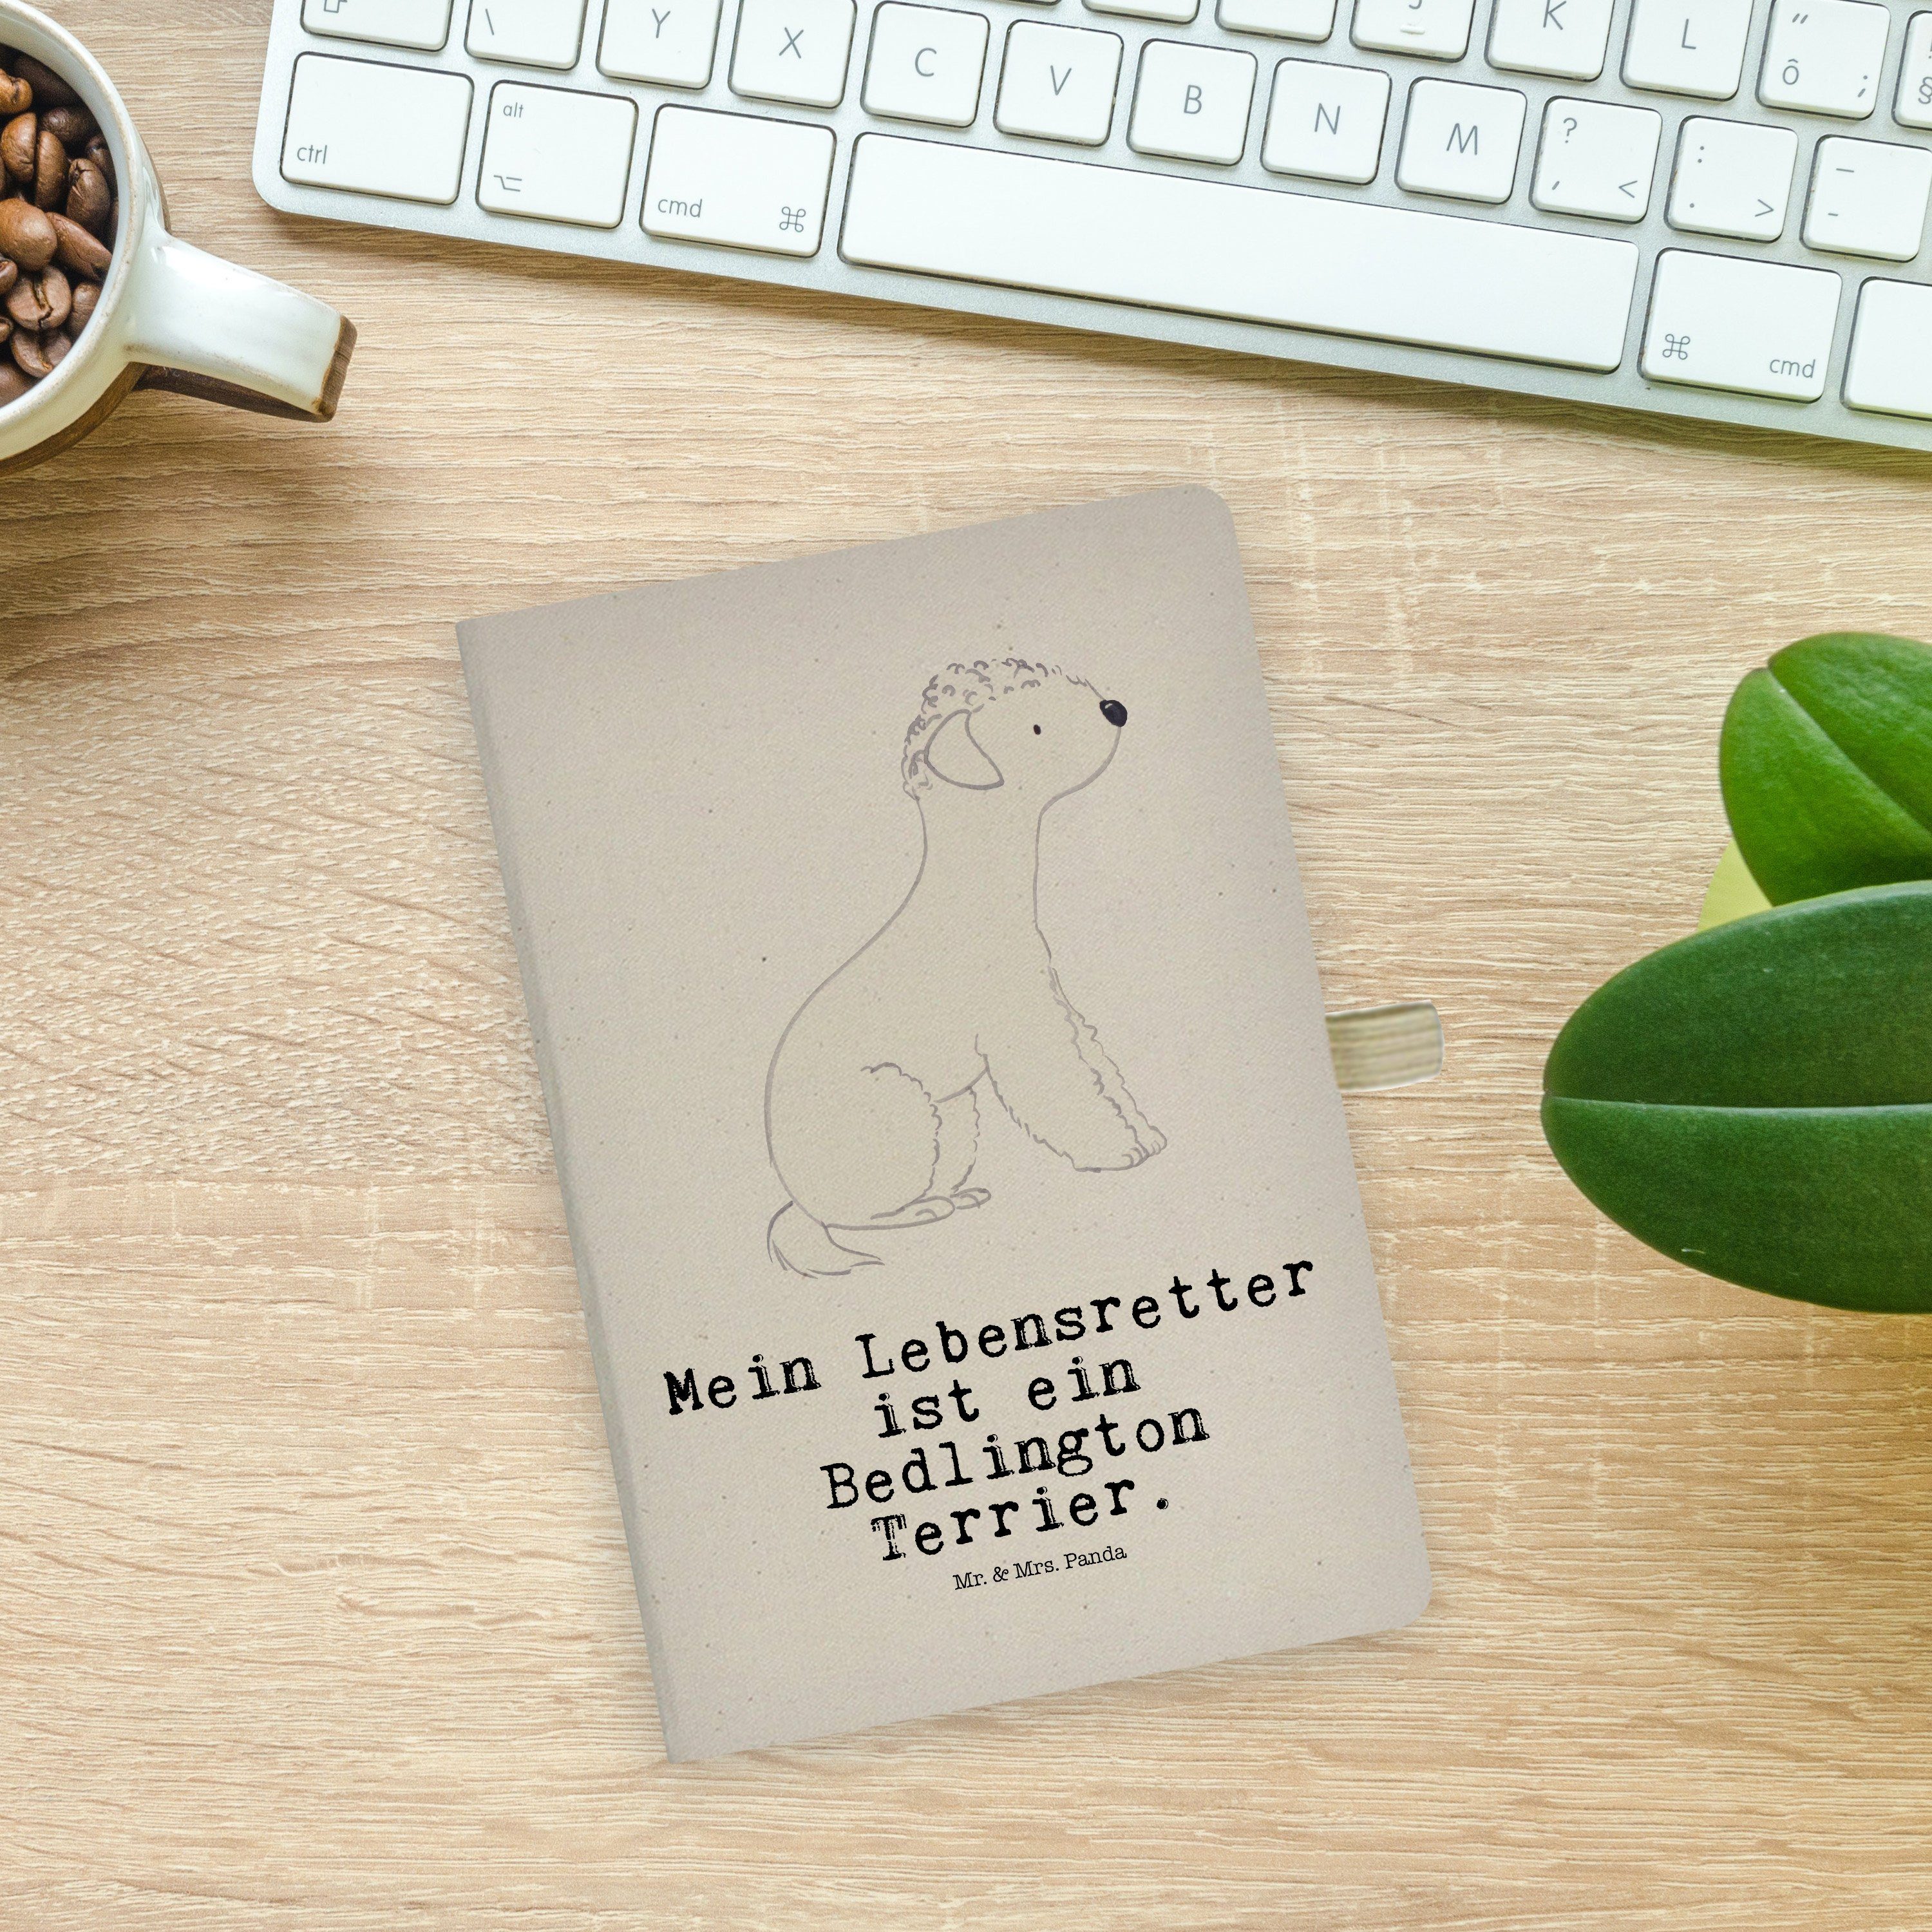 Mrs. Lebensretter Panda Mrs. Panda - Bedlington Mr. Transparent Terrier Notizbuch Geschenk, & Mr. & Schreibheft -